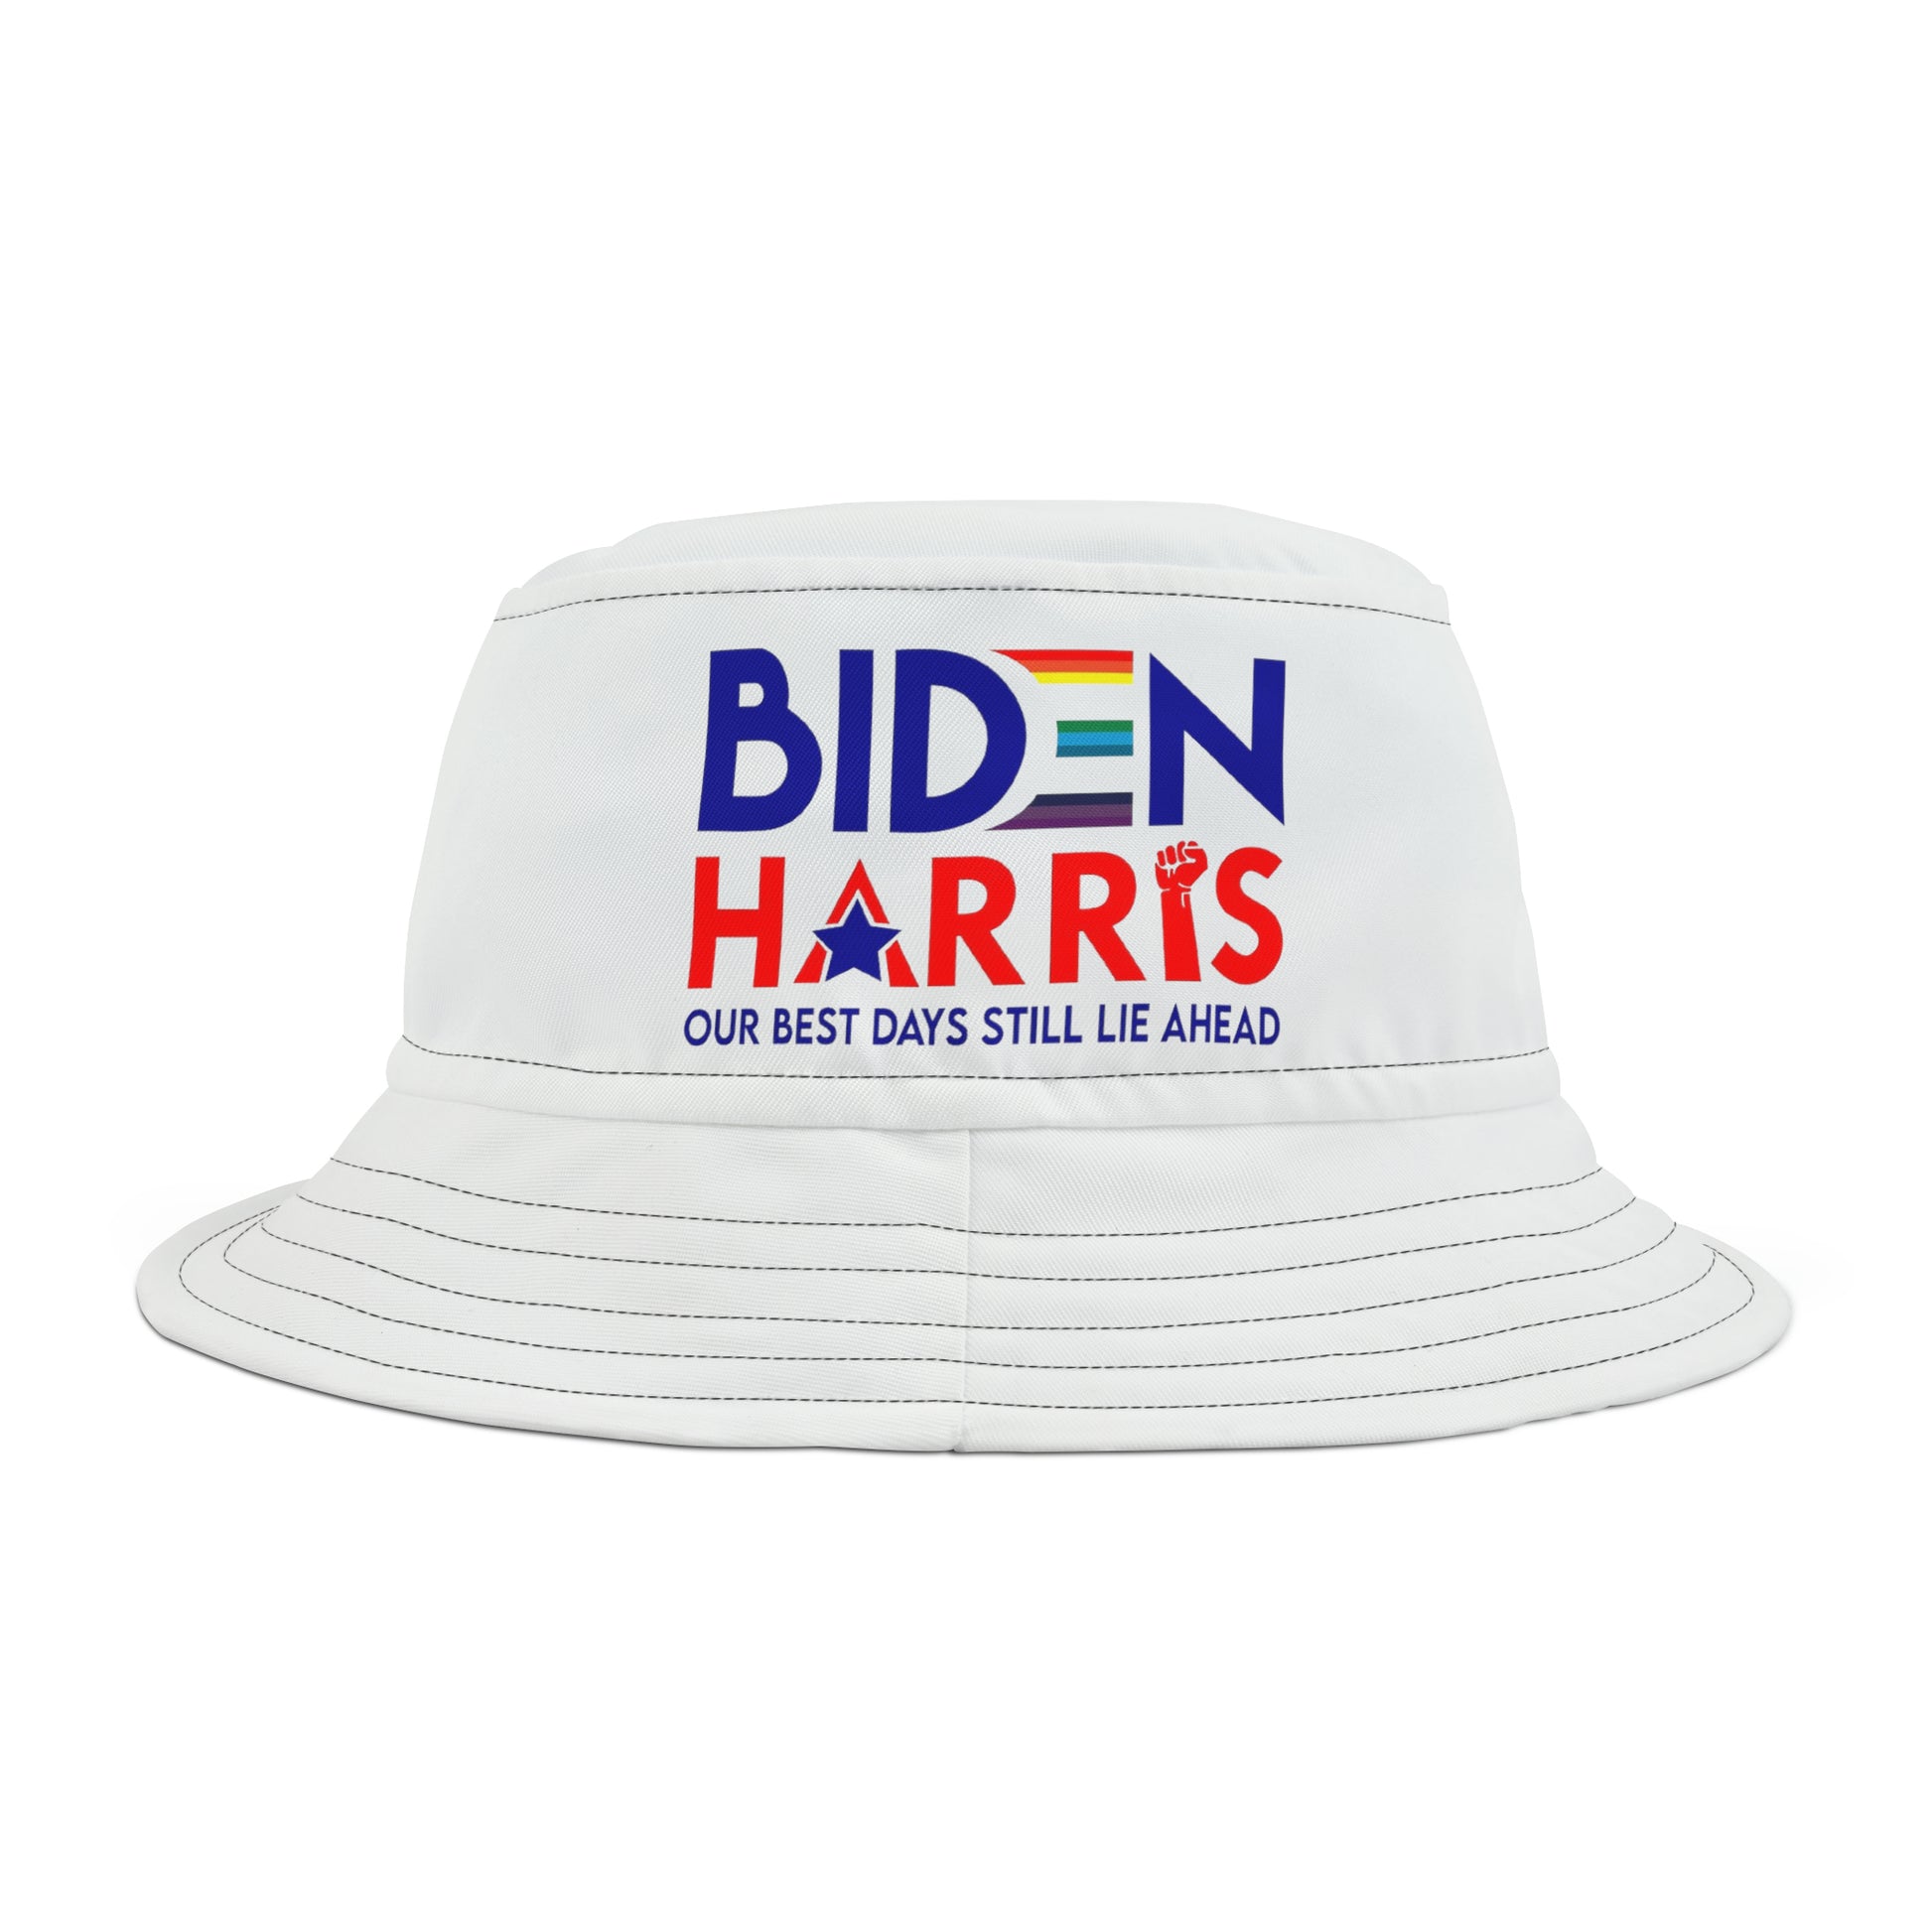 Biden Harris